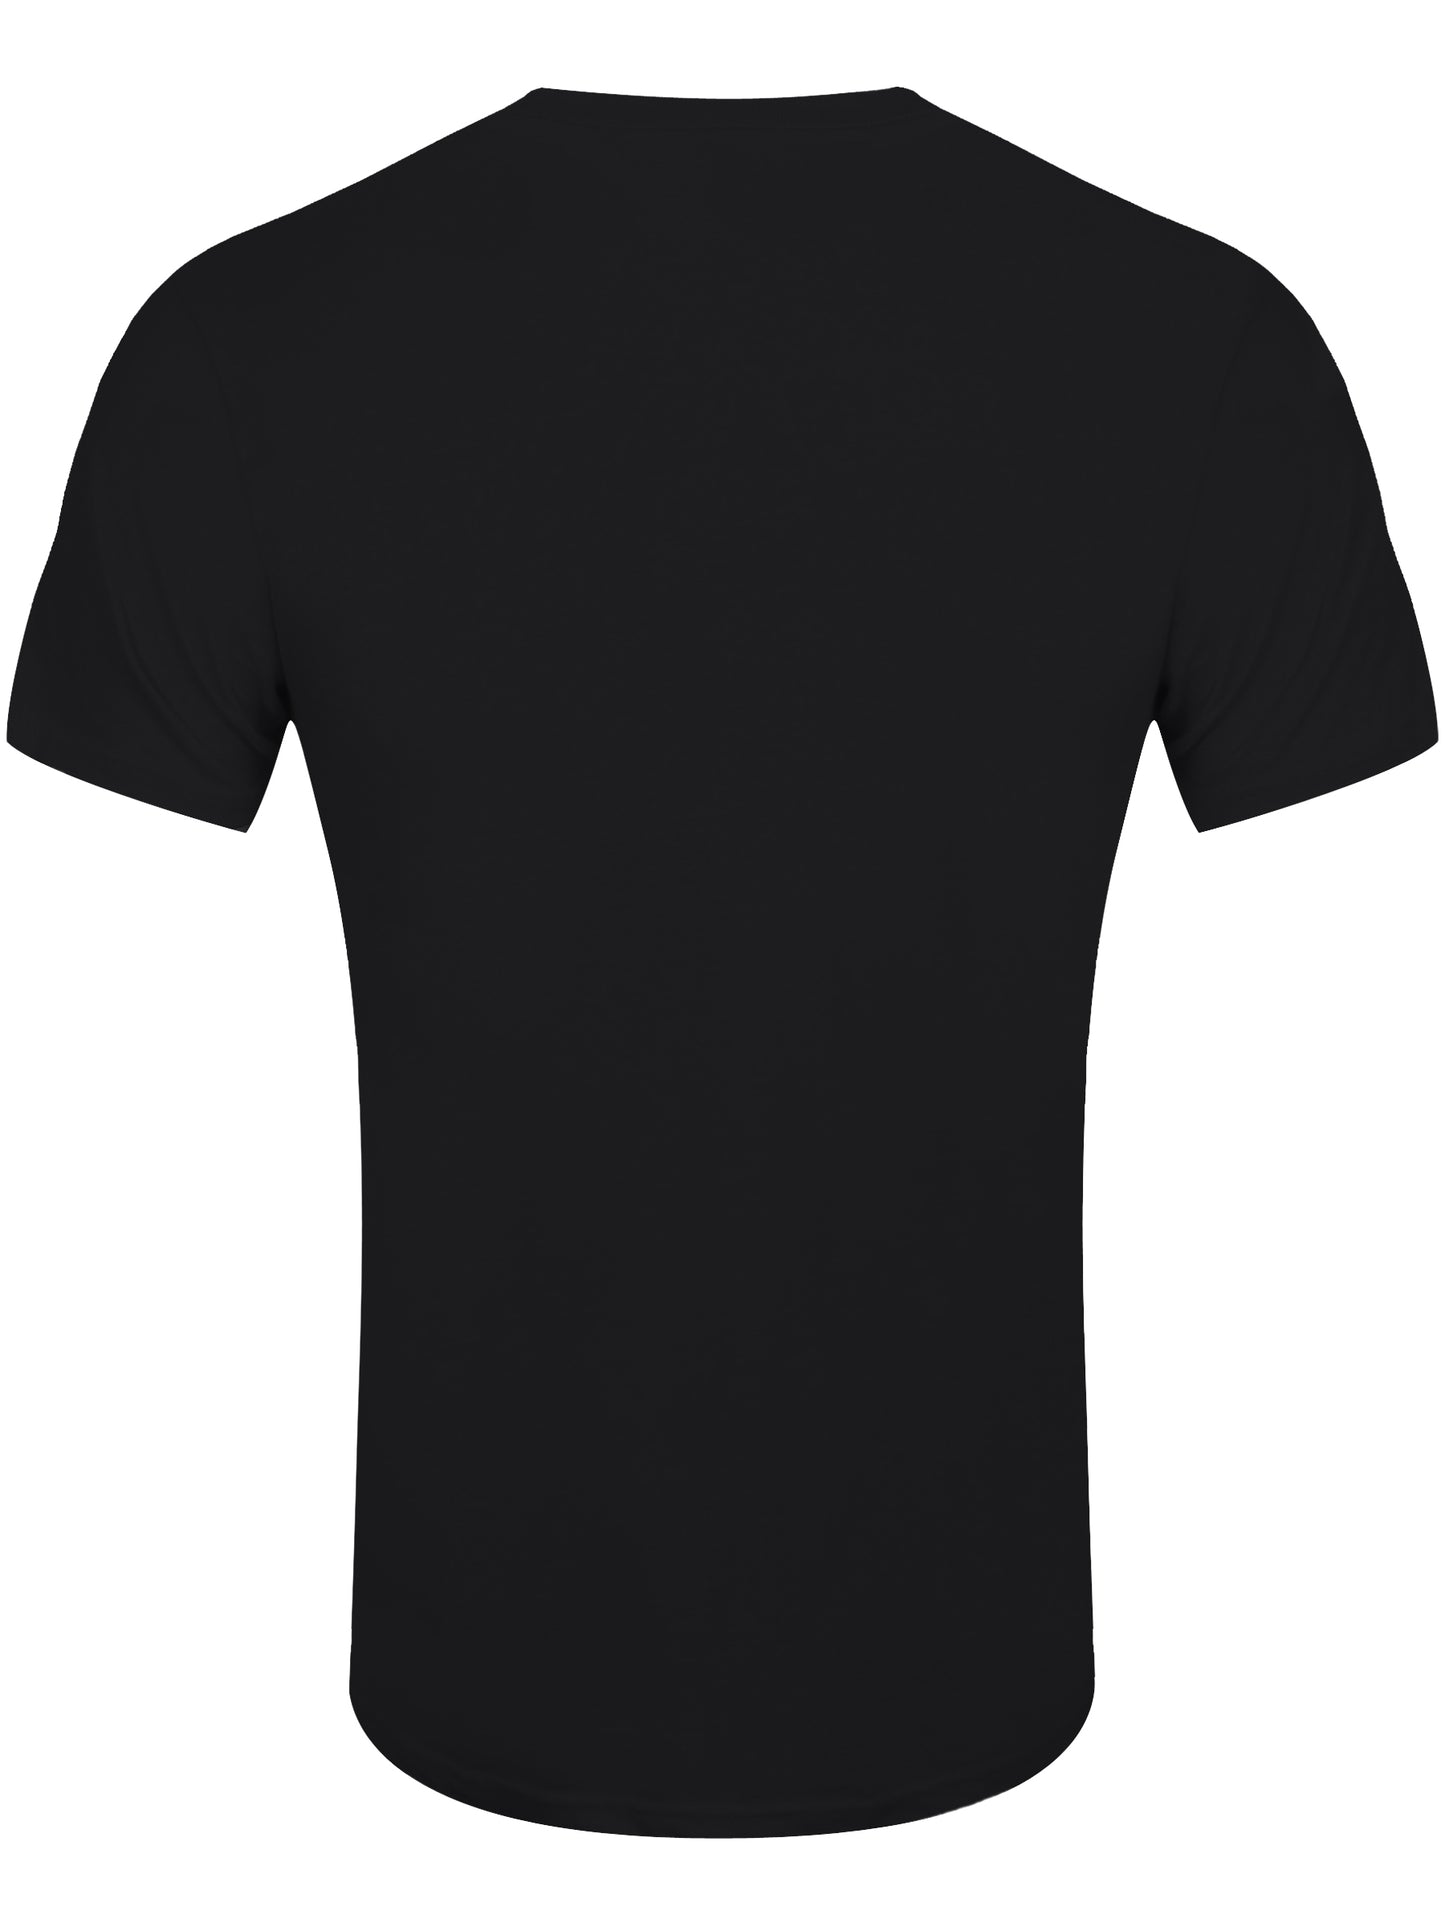 Led Zeppelin Madison Square Garden 1975 Men's Black T-Shirt